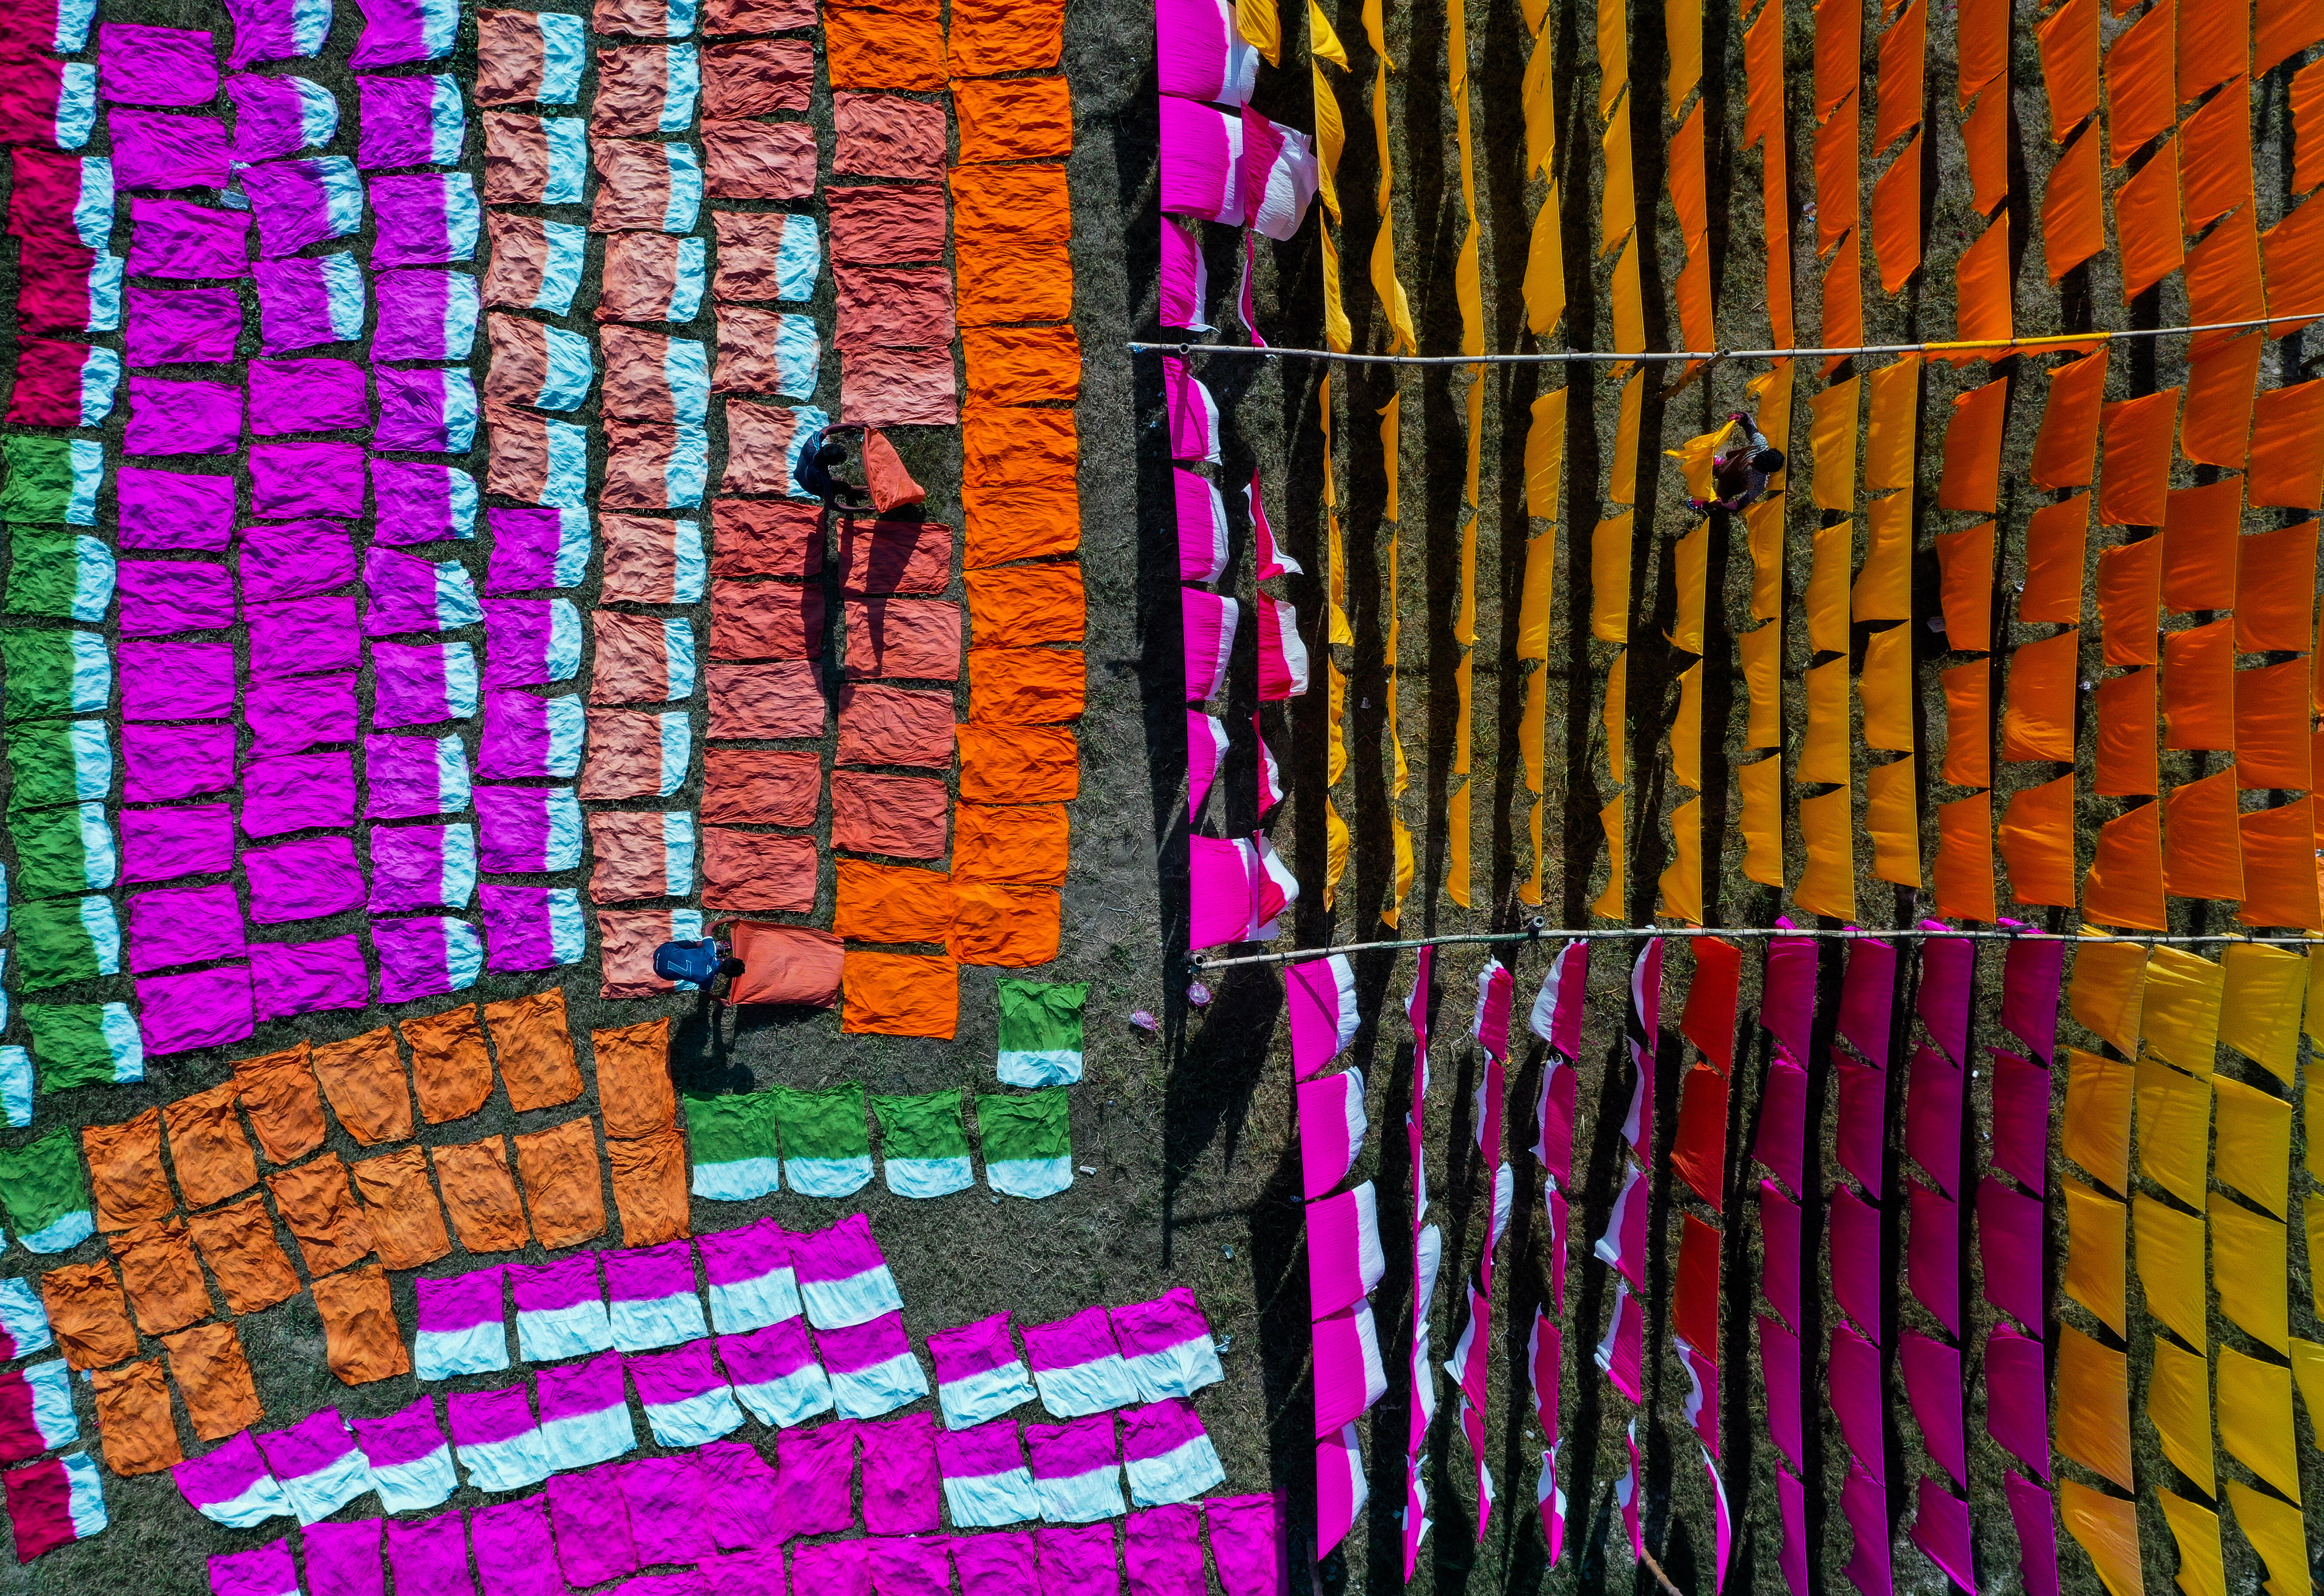 Финалист в категории Путешествия, 2021. Сушка окрашенной ткани. Дакка, Бангладеш. Автор Султан Ахмед Нилой